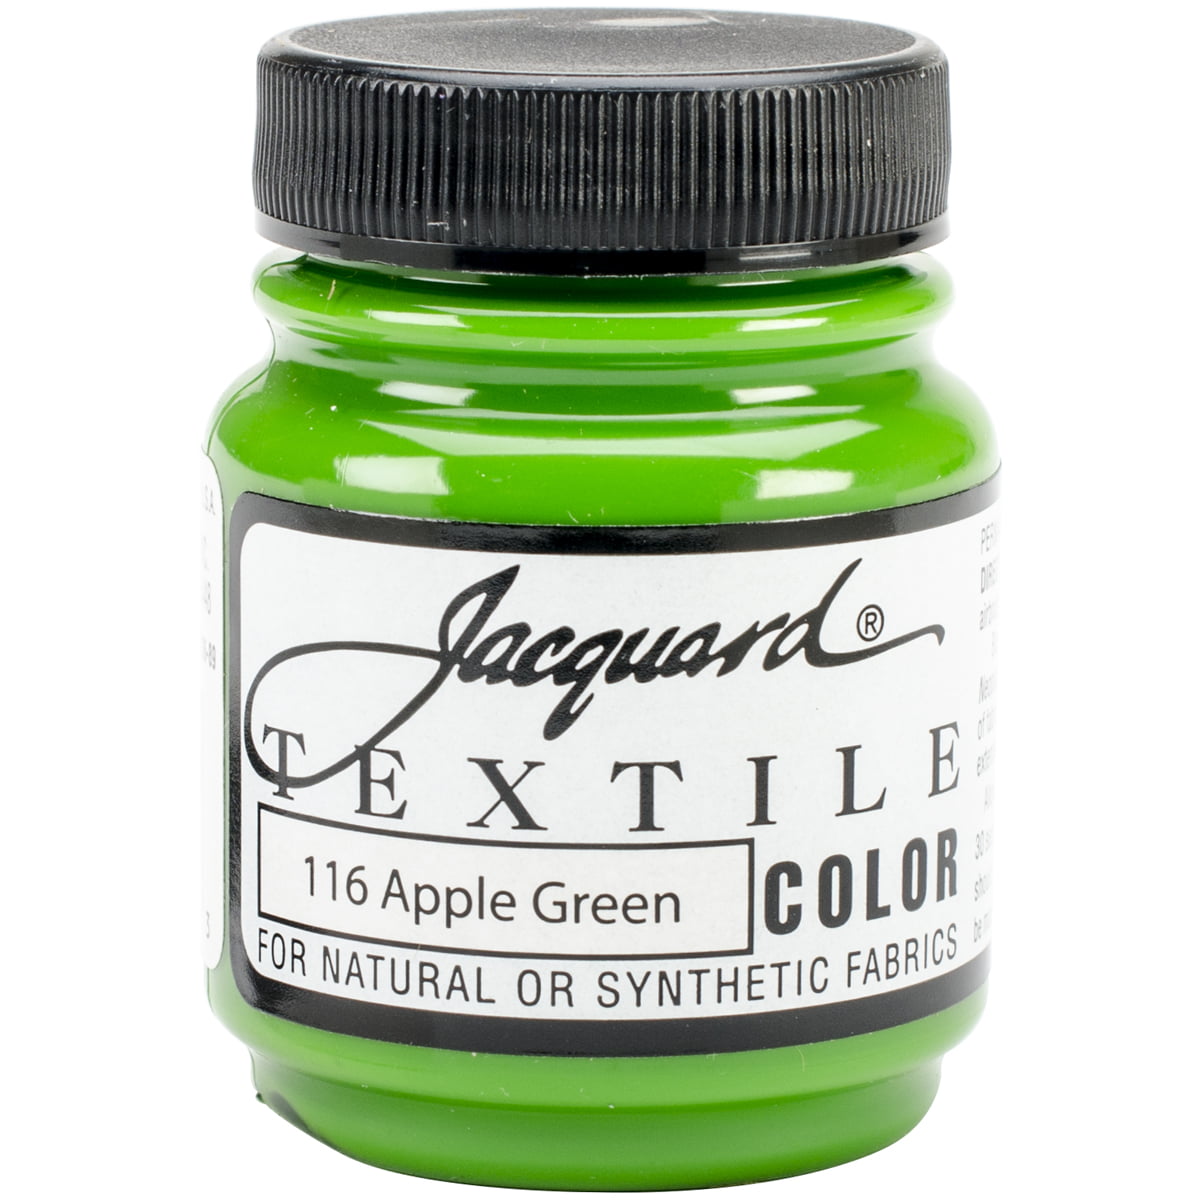 Jacquard Textile Color Fabric Paint 2.25oz-Apple Green - Walmart.com